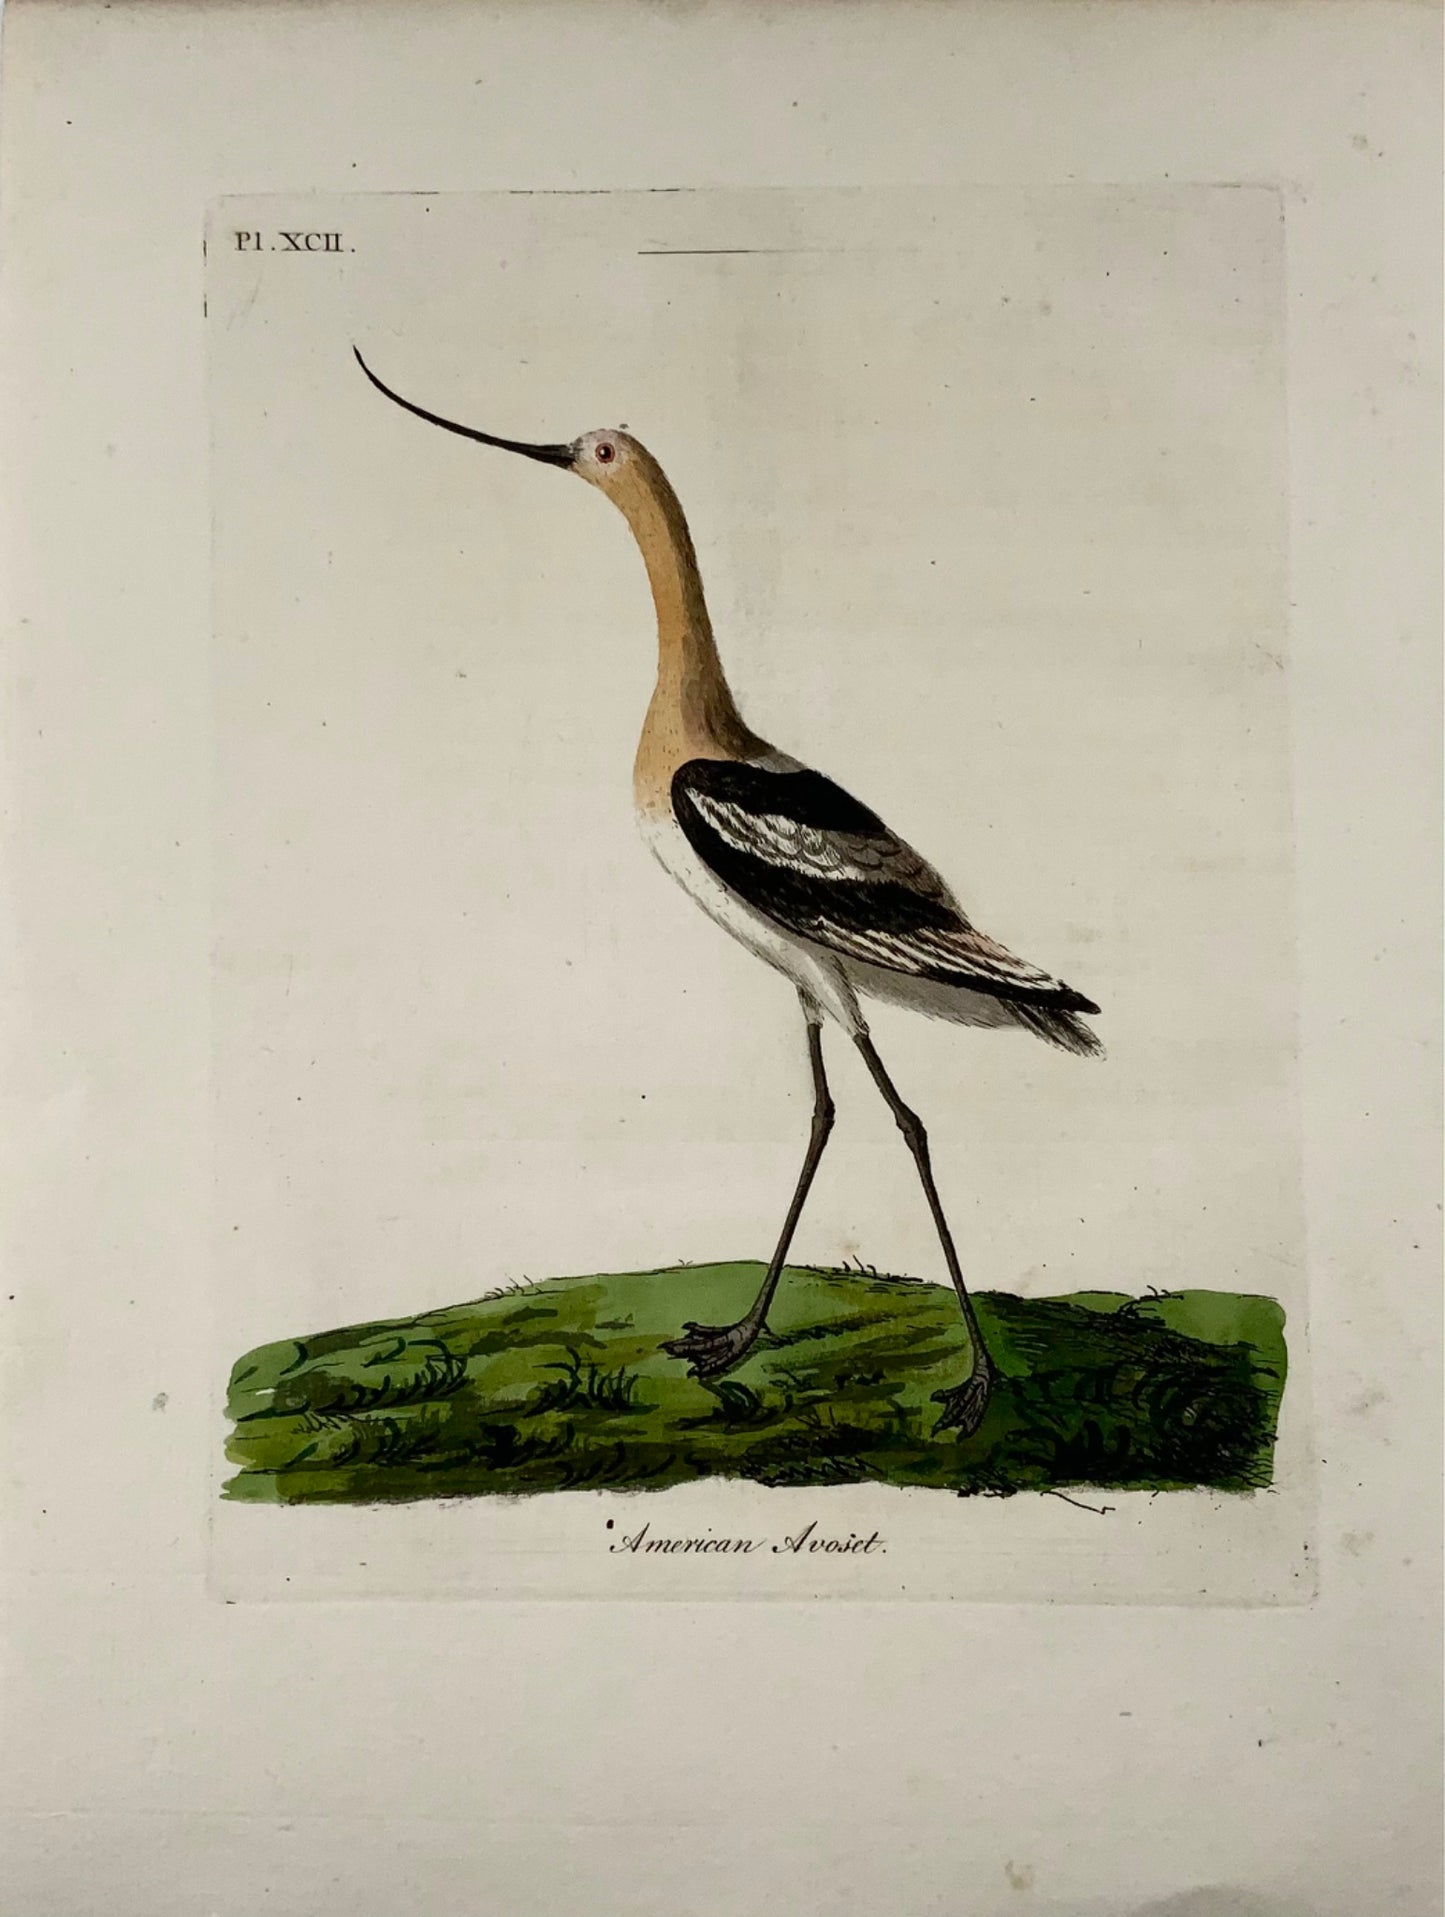 1785 Avocette d'Amérique, John Latham, quarto, ornithologie, gravure colorée à la main